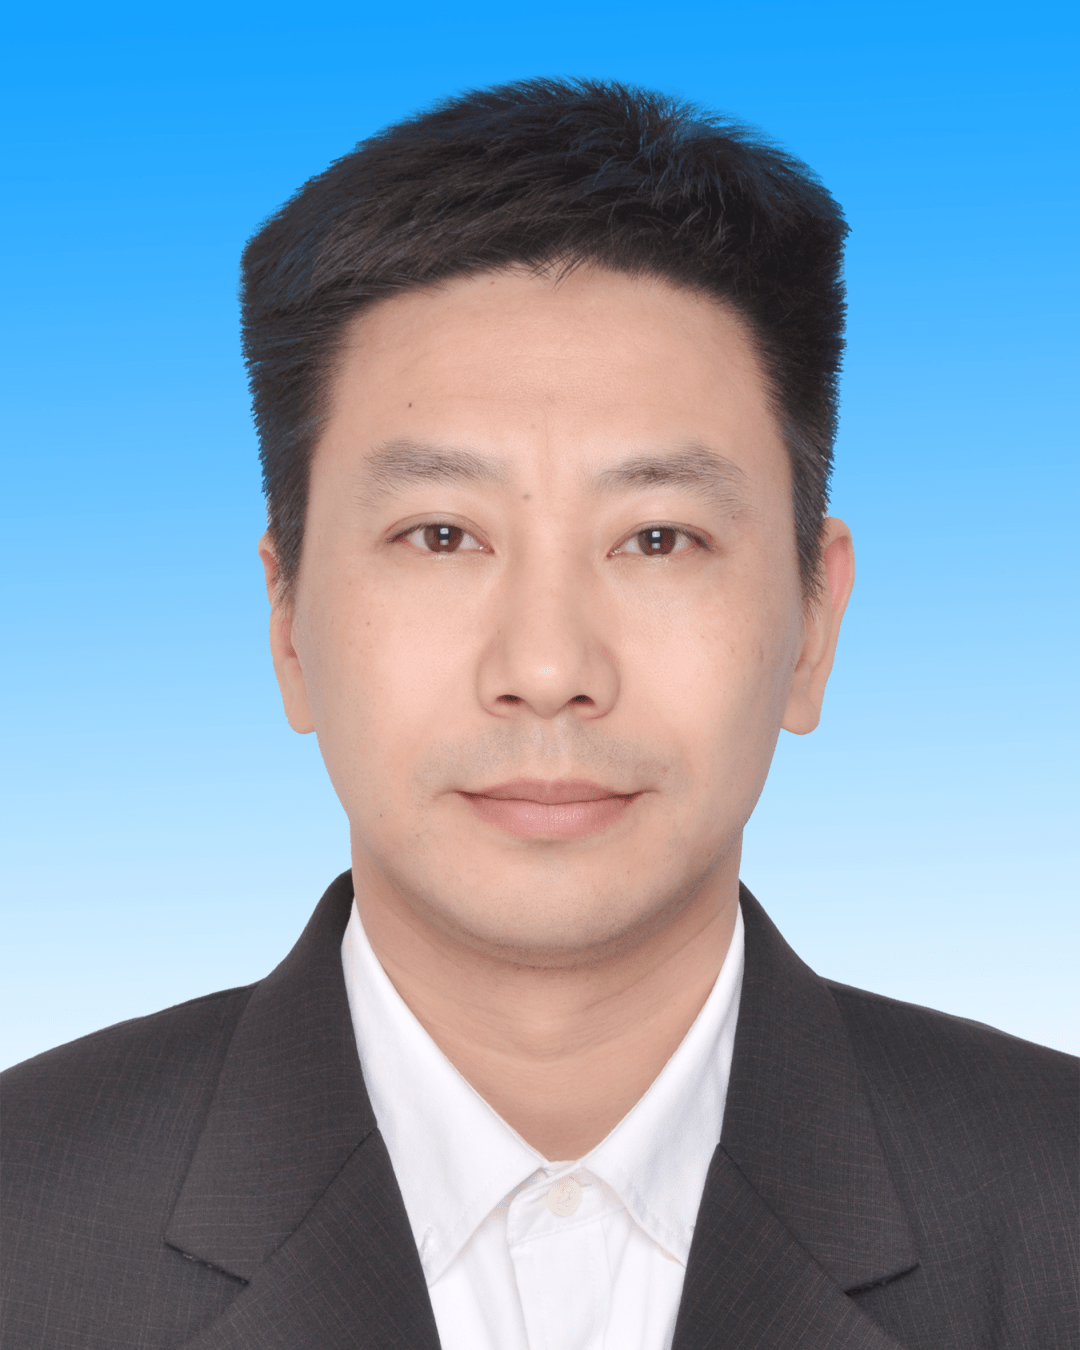 于2021年8月11日决定:湖口县历任九江市委宣传部网管办主任,干